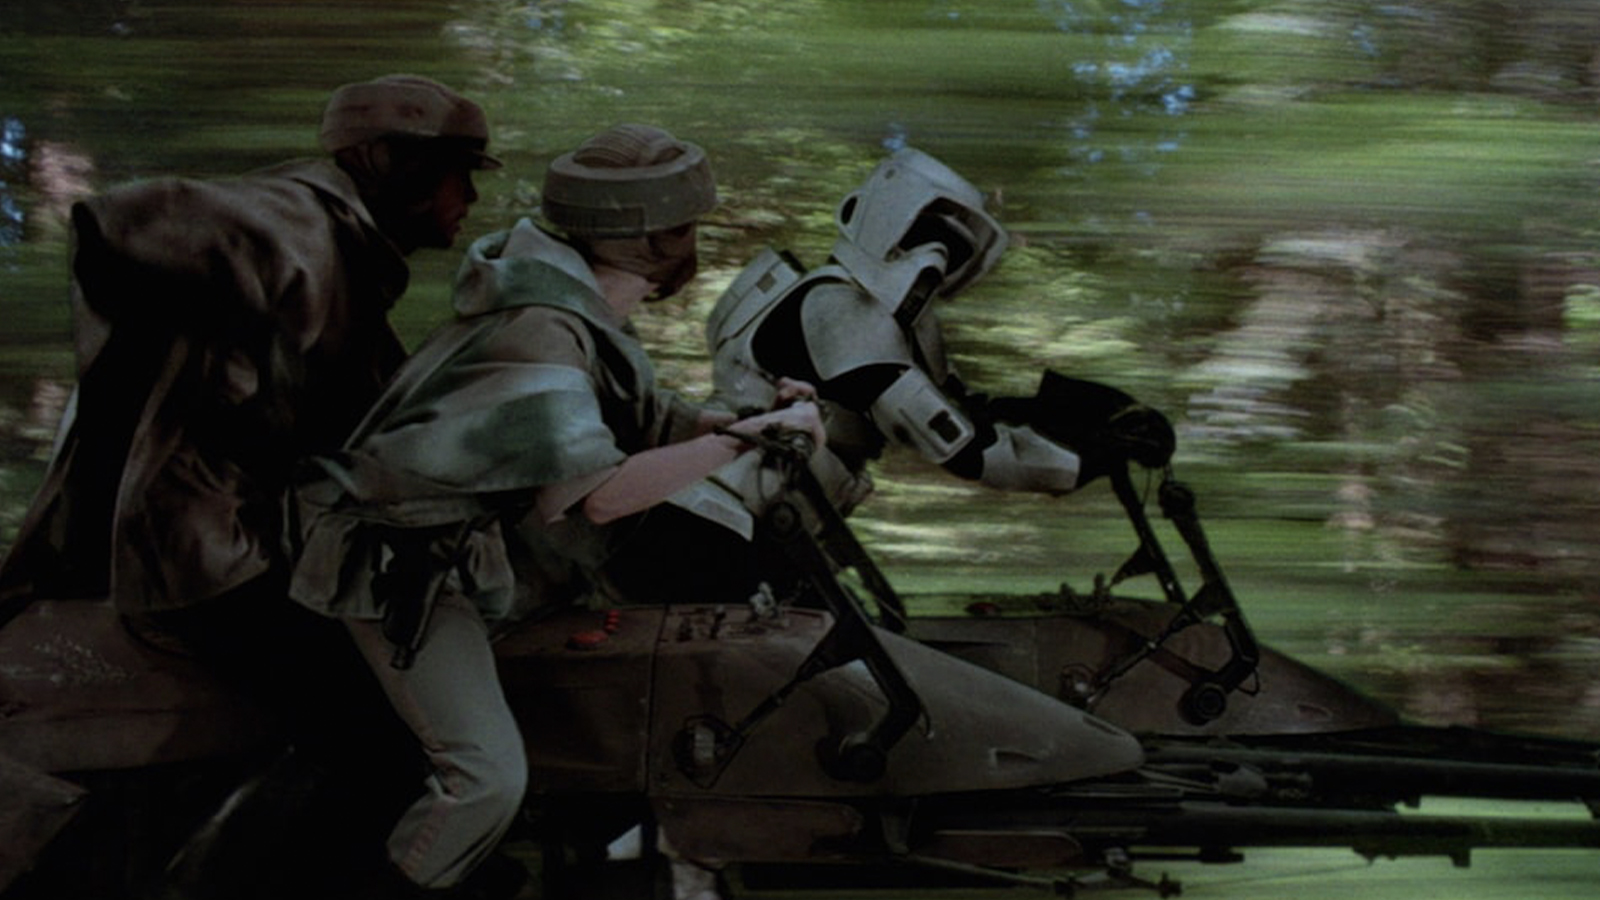 Rebels racing Stormtrooper on Speeder